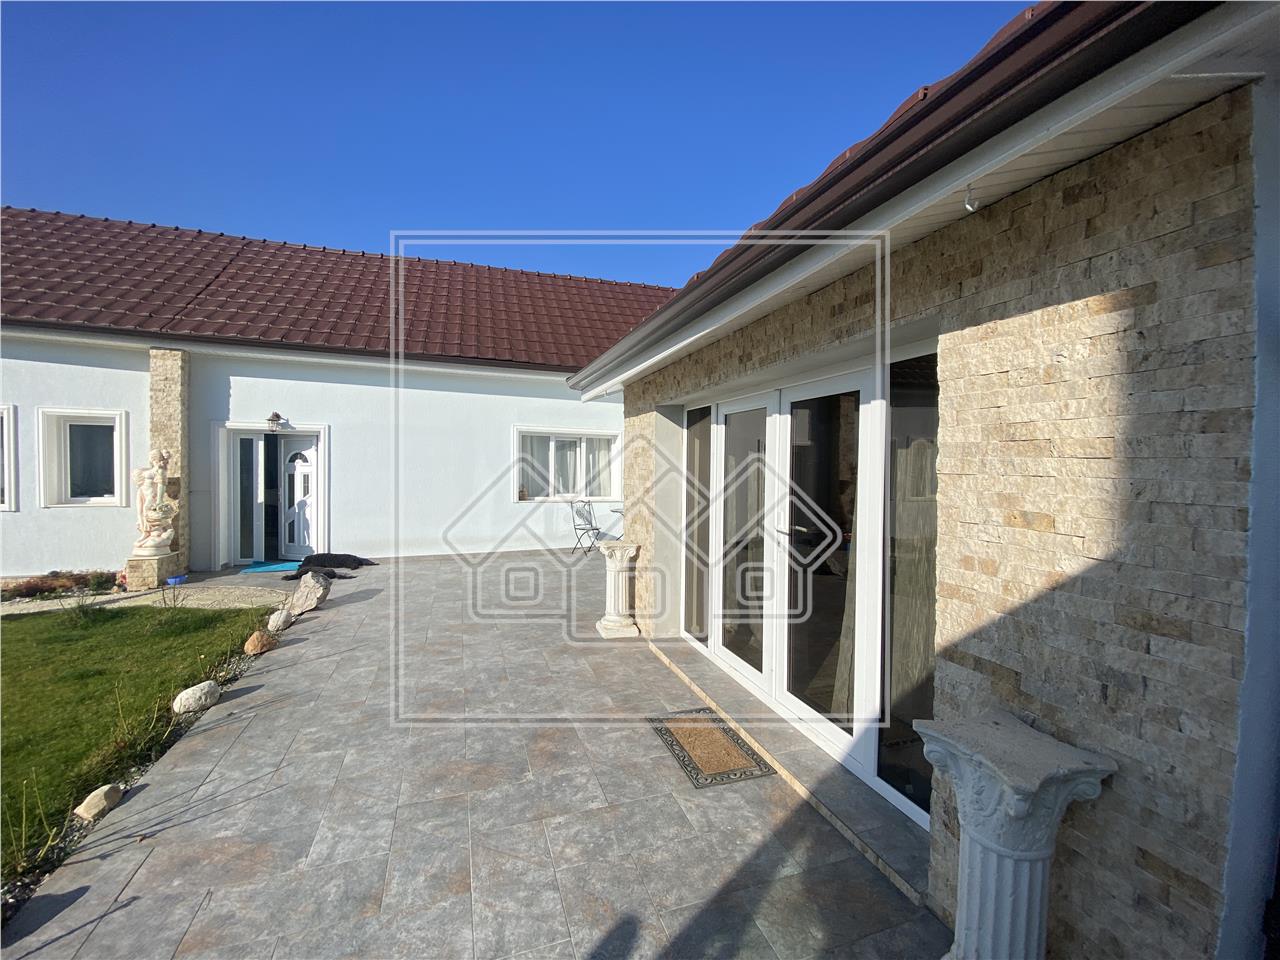 House for sale in Alba - located in Seusa, near Ciugud, Alba